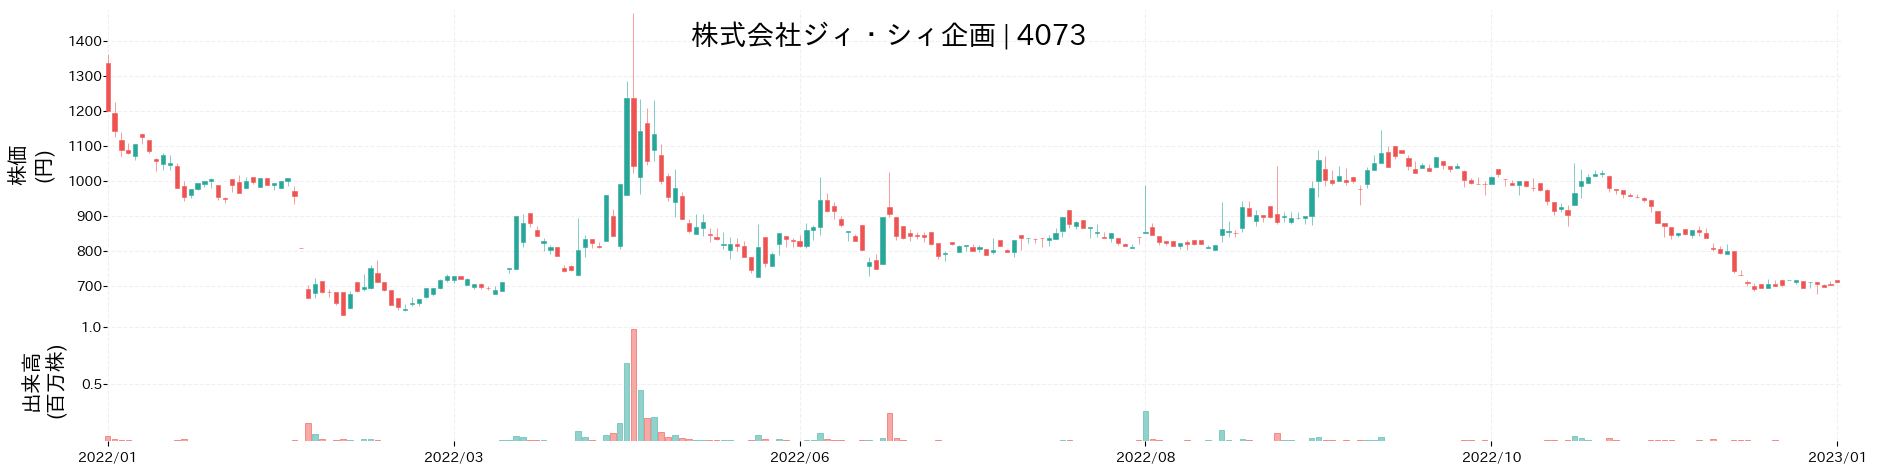 ジィ・シィ企画の株価推移(2022)